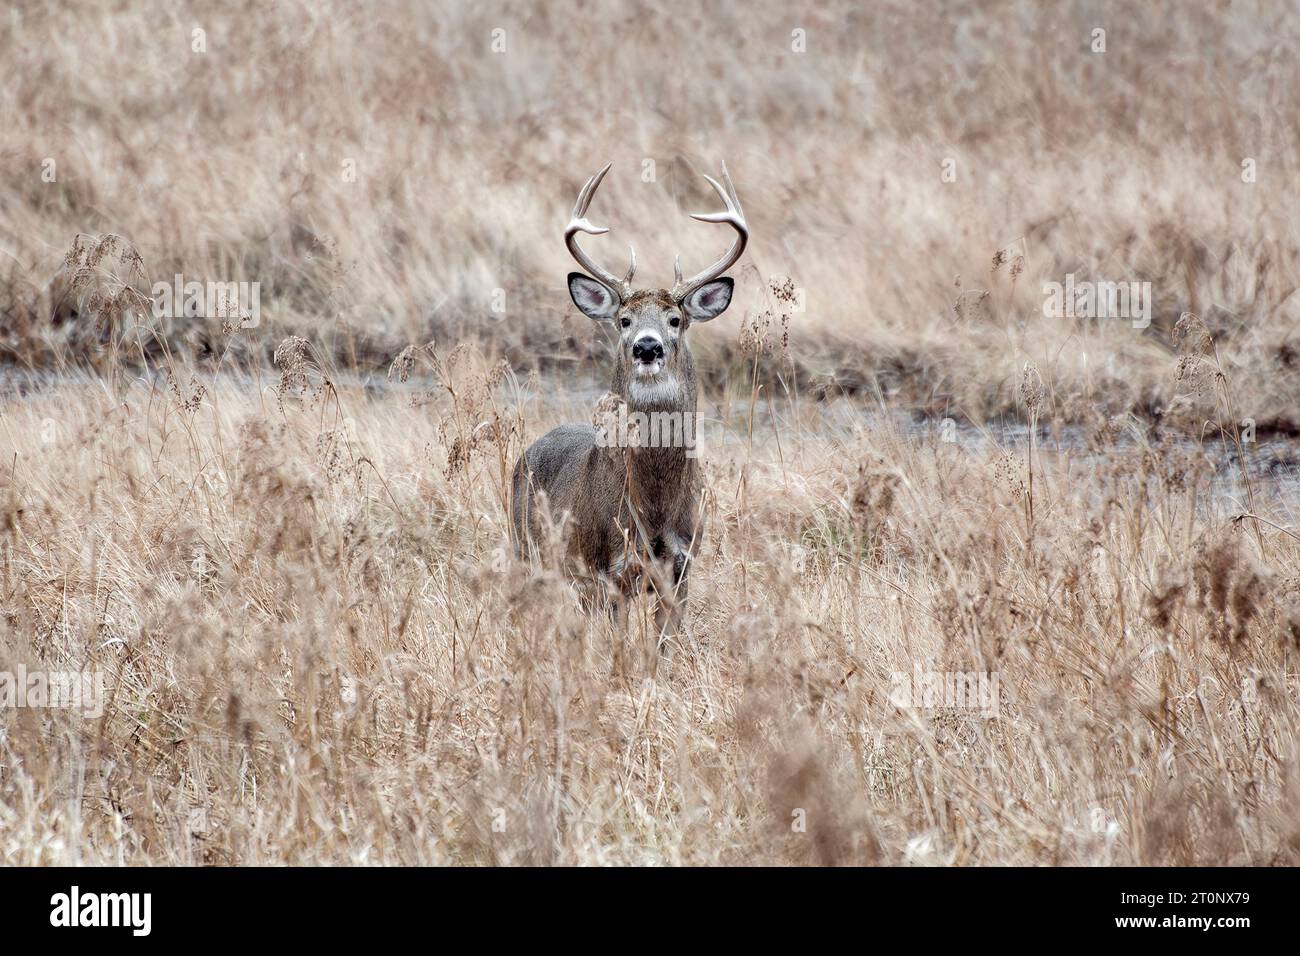 Ein Northern White-Tail Deer Bock steht auf einem Feld - New England Fall. Stockfoto